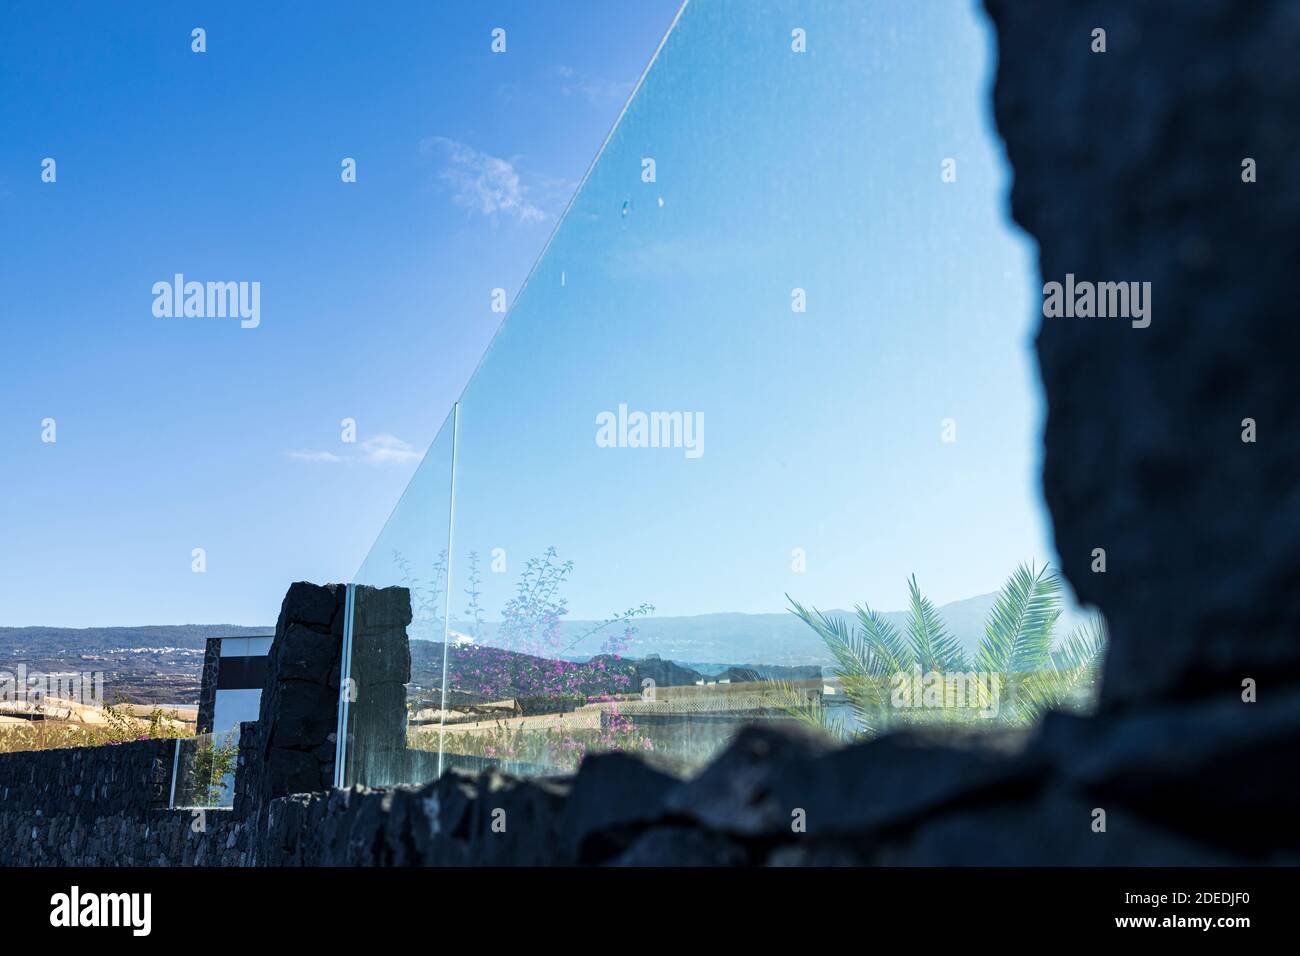 Detalle arquitectónico de paneles de cristal como parte de la pared exterior de una desaladora de agua en Fonsalia, Playa San Juan, Tenerife, Islas Canarias, Foto de stock